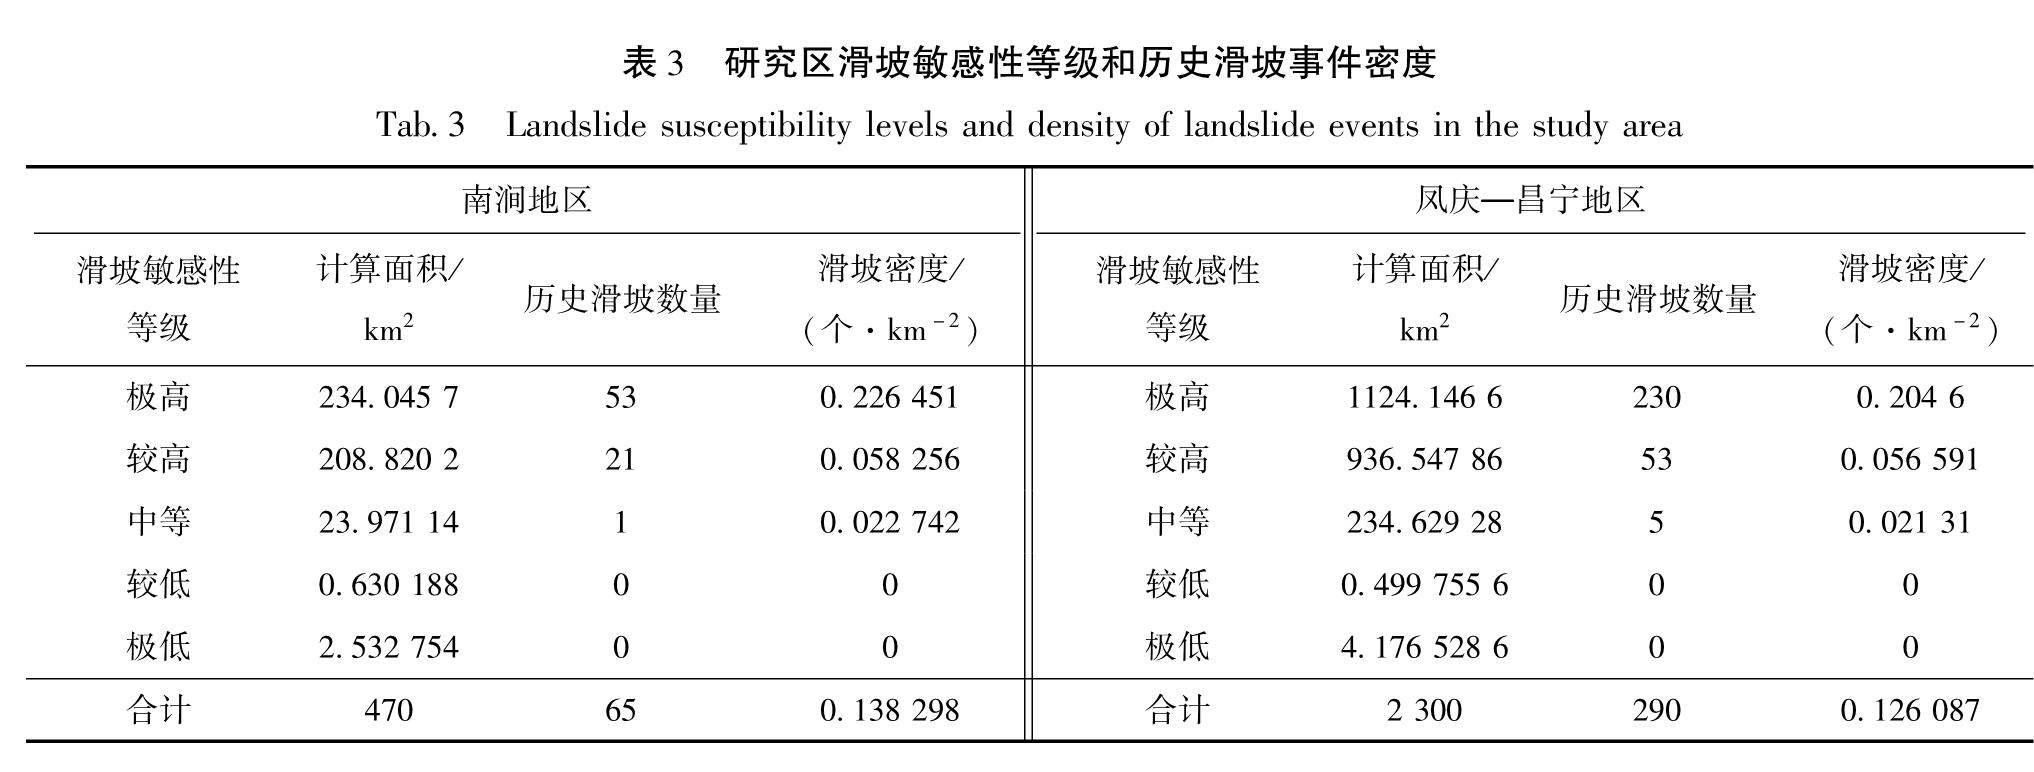 表3 研究区滑坡敏感性等级和历史滑坡事件密度<br/>Tab.3 Landslide susceptibility levels and density of landslide events in the study area